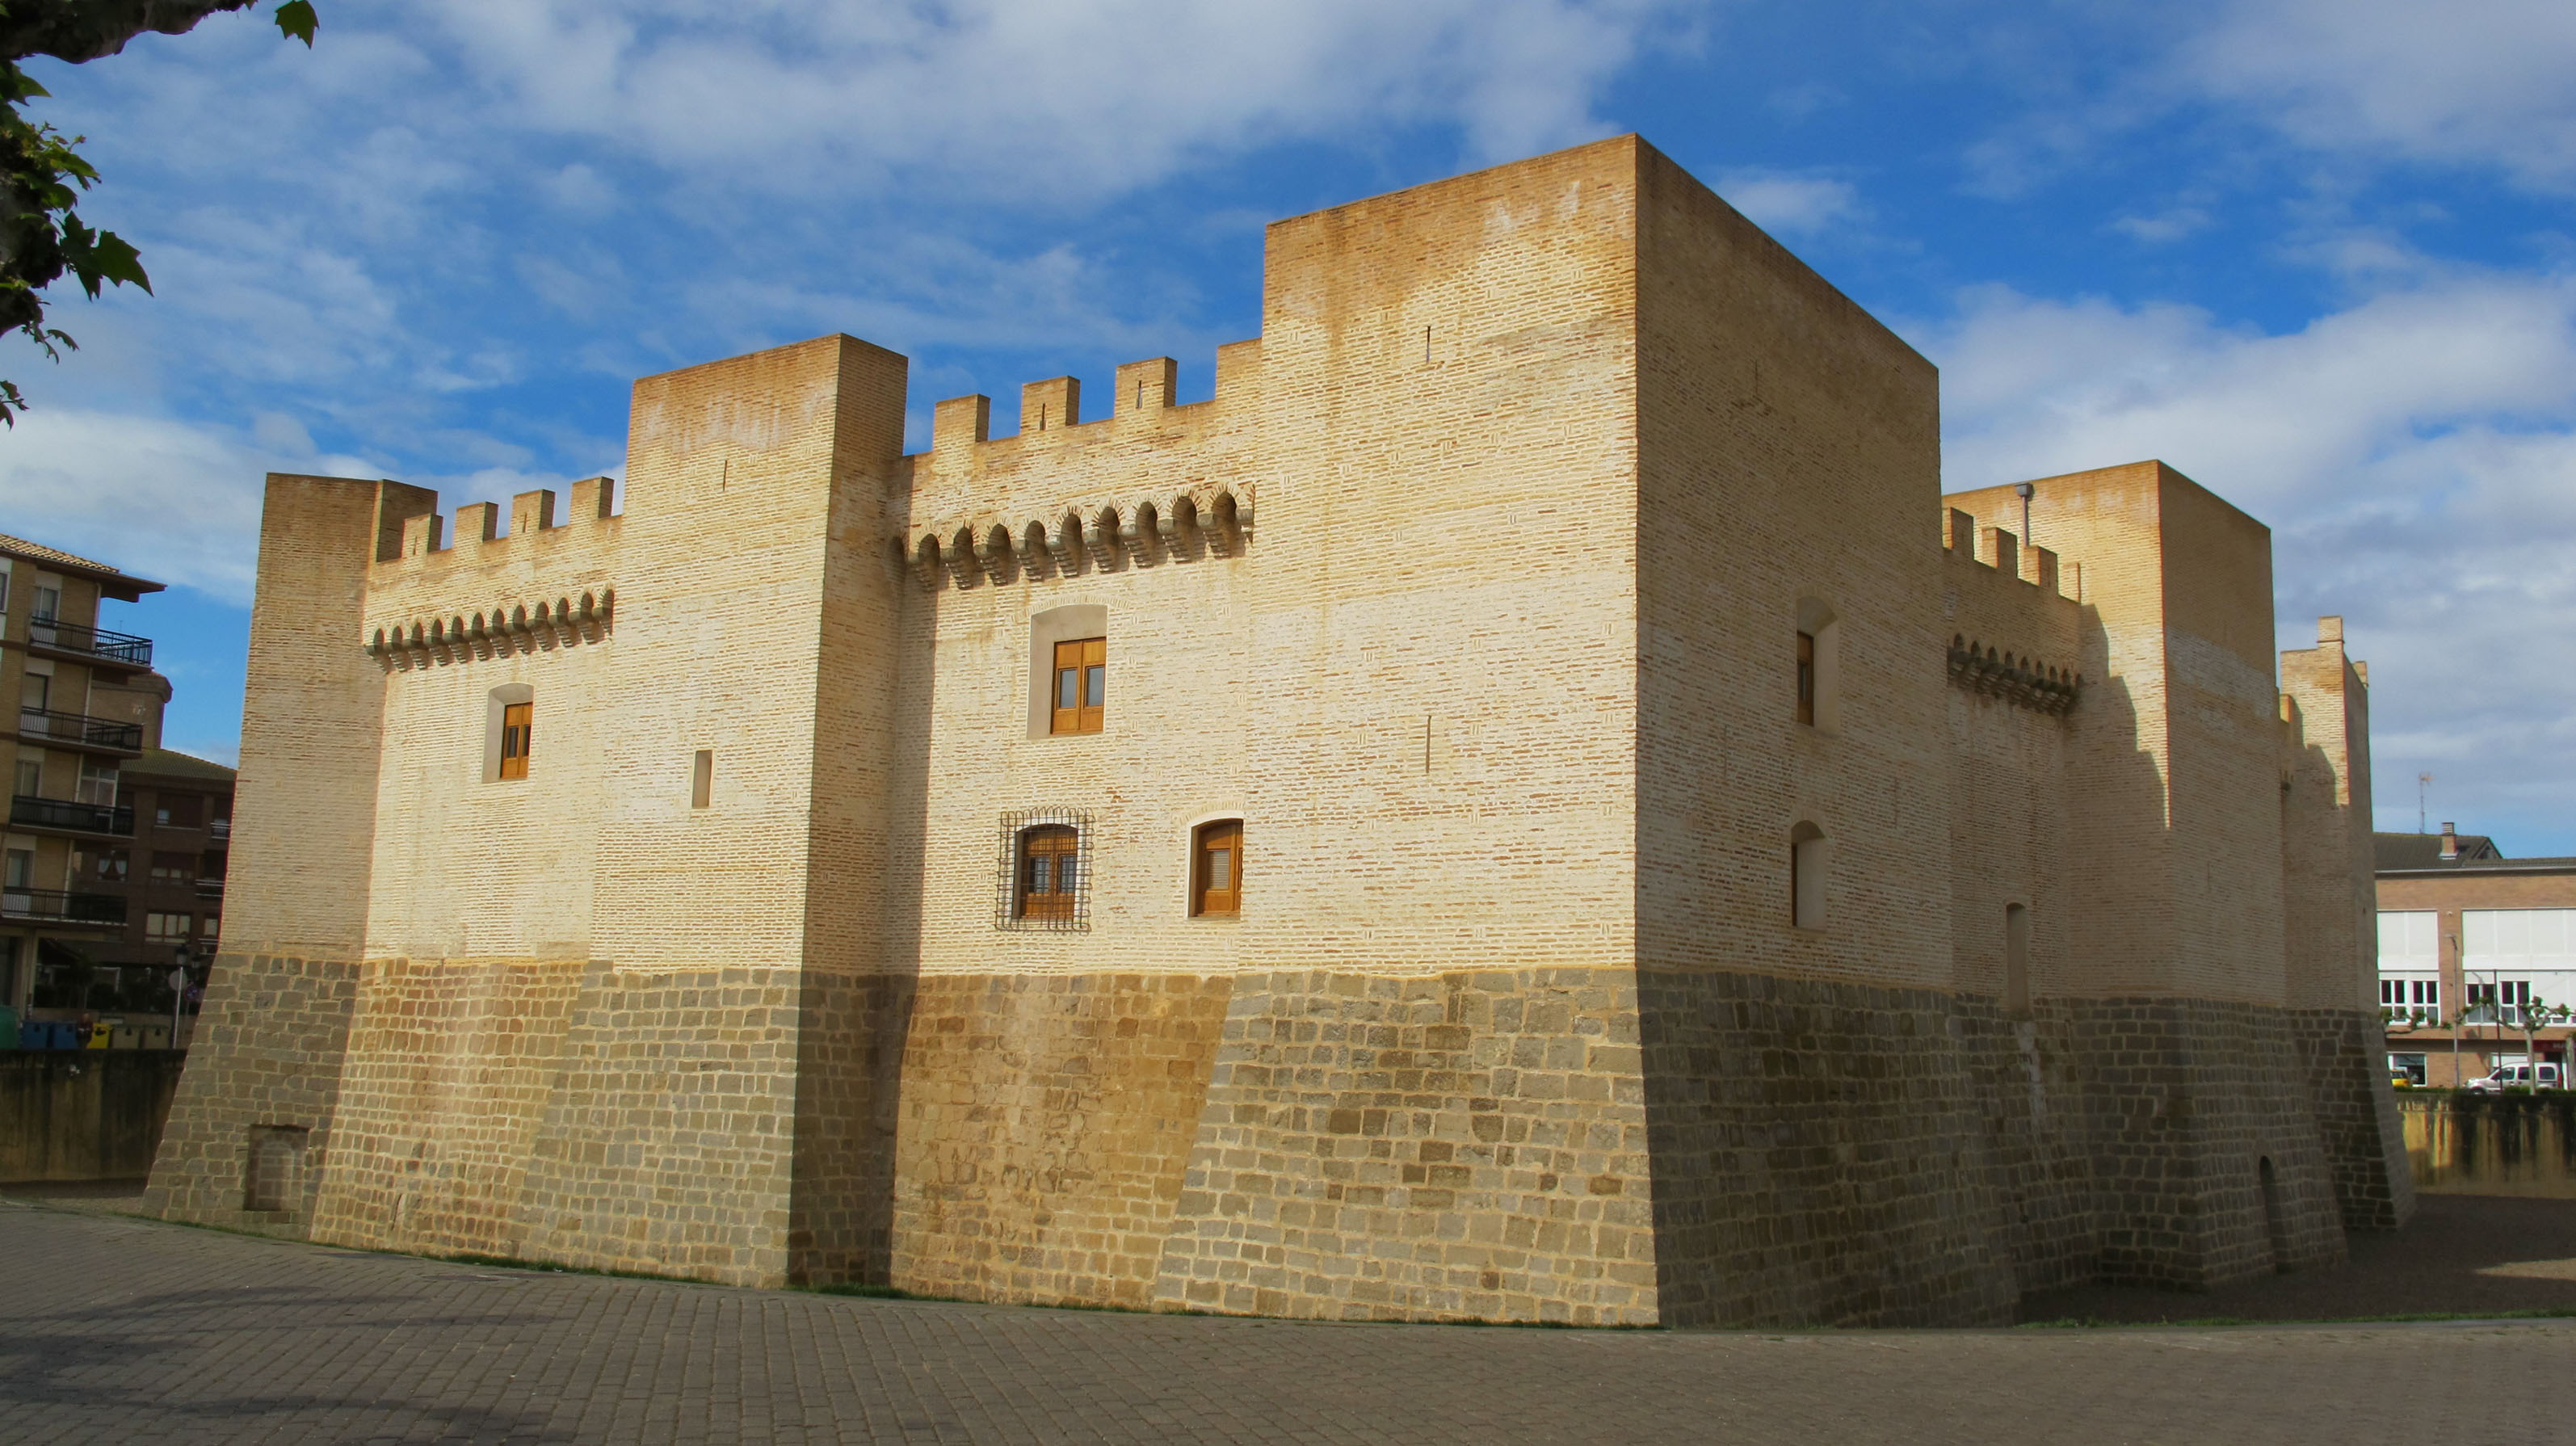 Palacio de Marcilla gaztelua, Martzlla